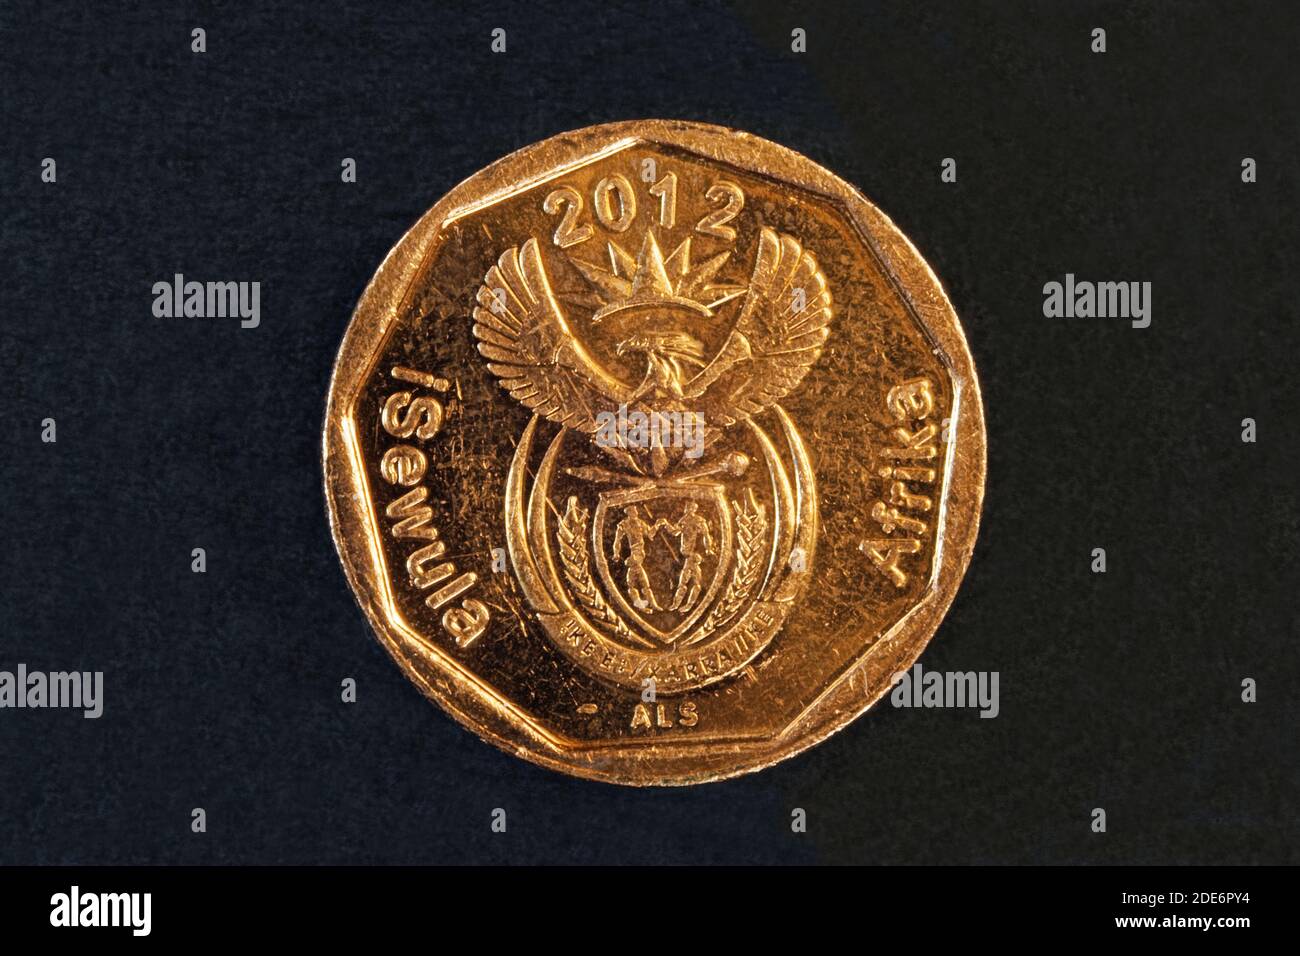 Monedas de foto,Sudáfrica, iNingizimu áfrica, 10 centavos, 2012, República de Sudáfrica Foto de stock